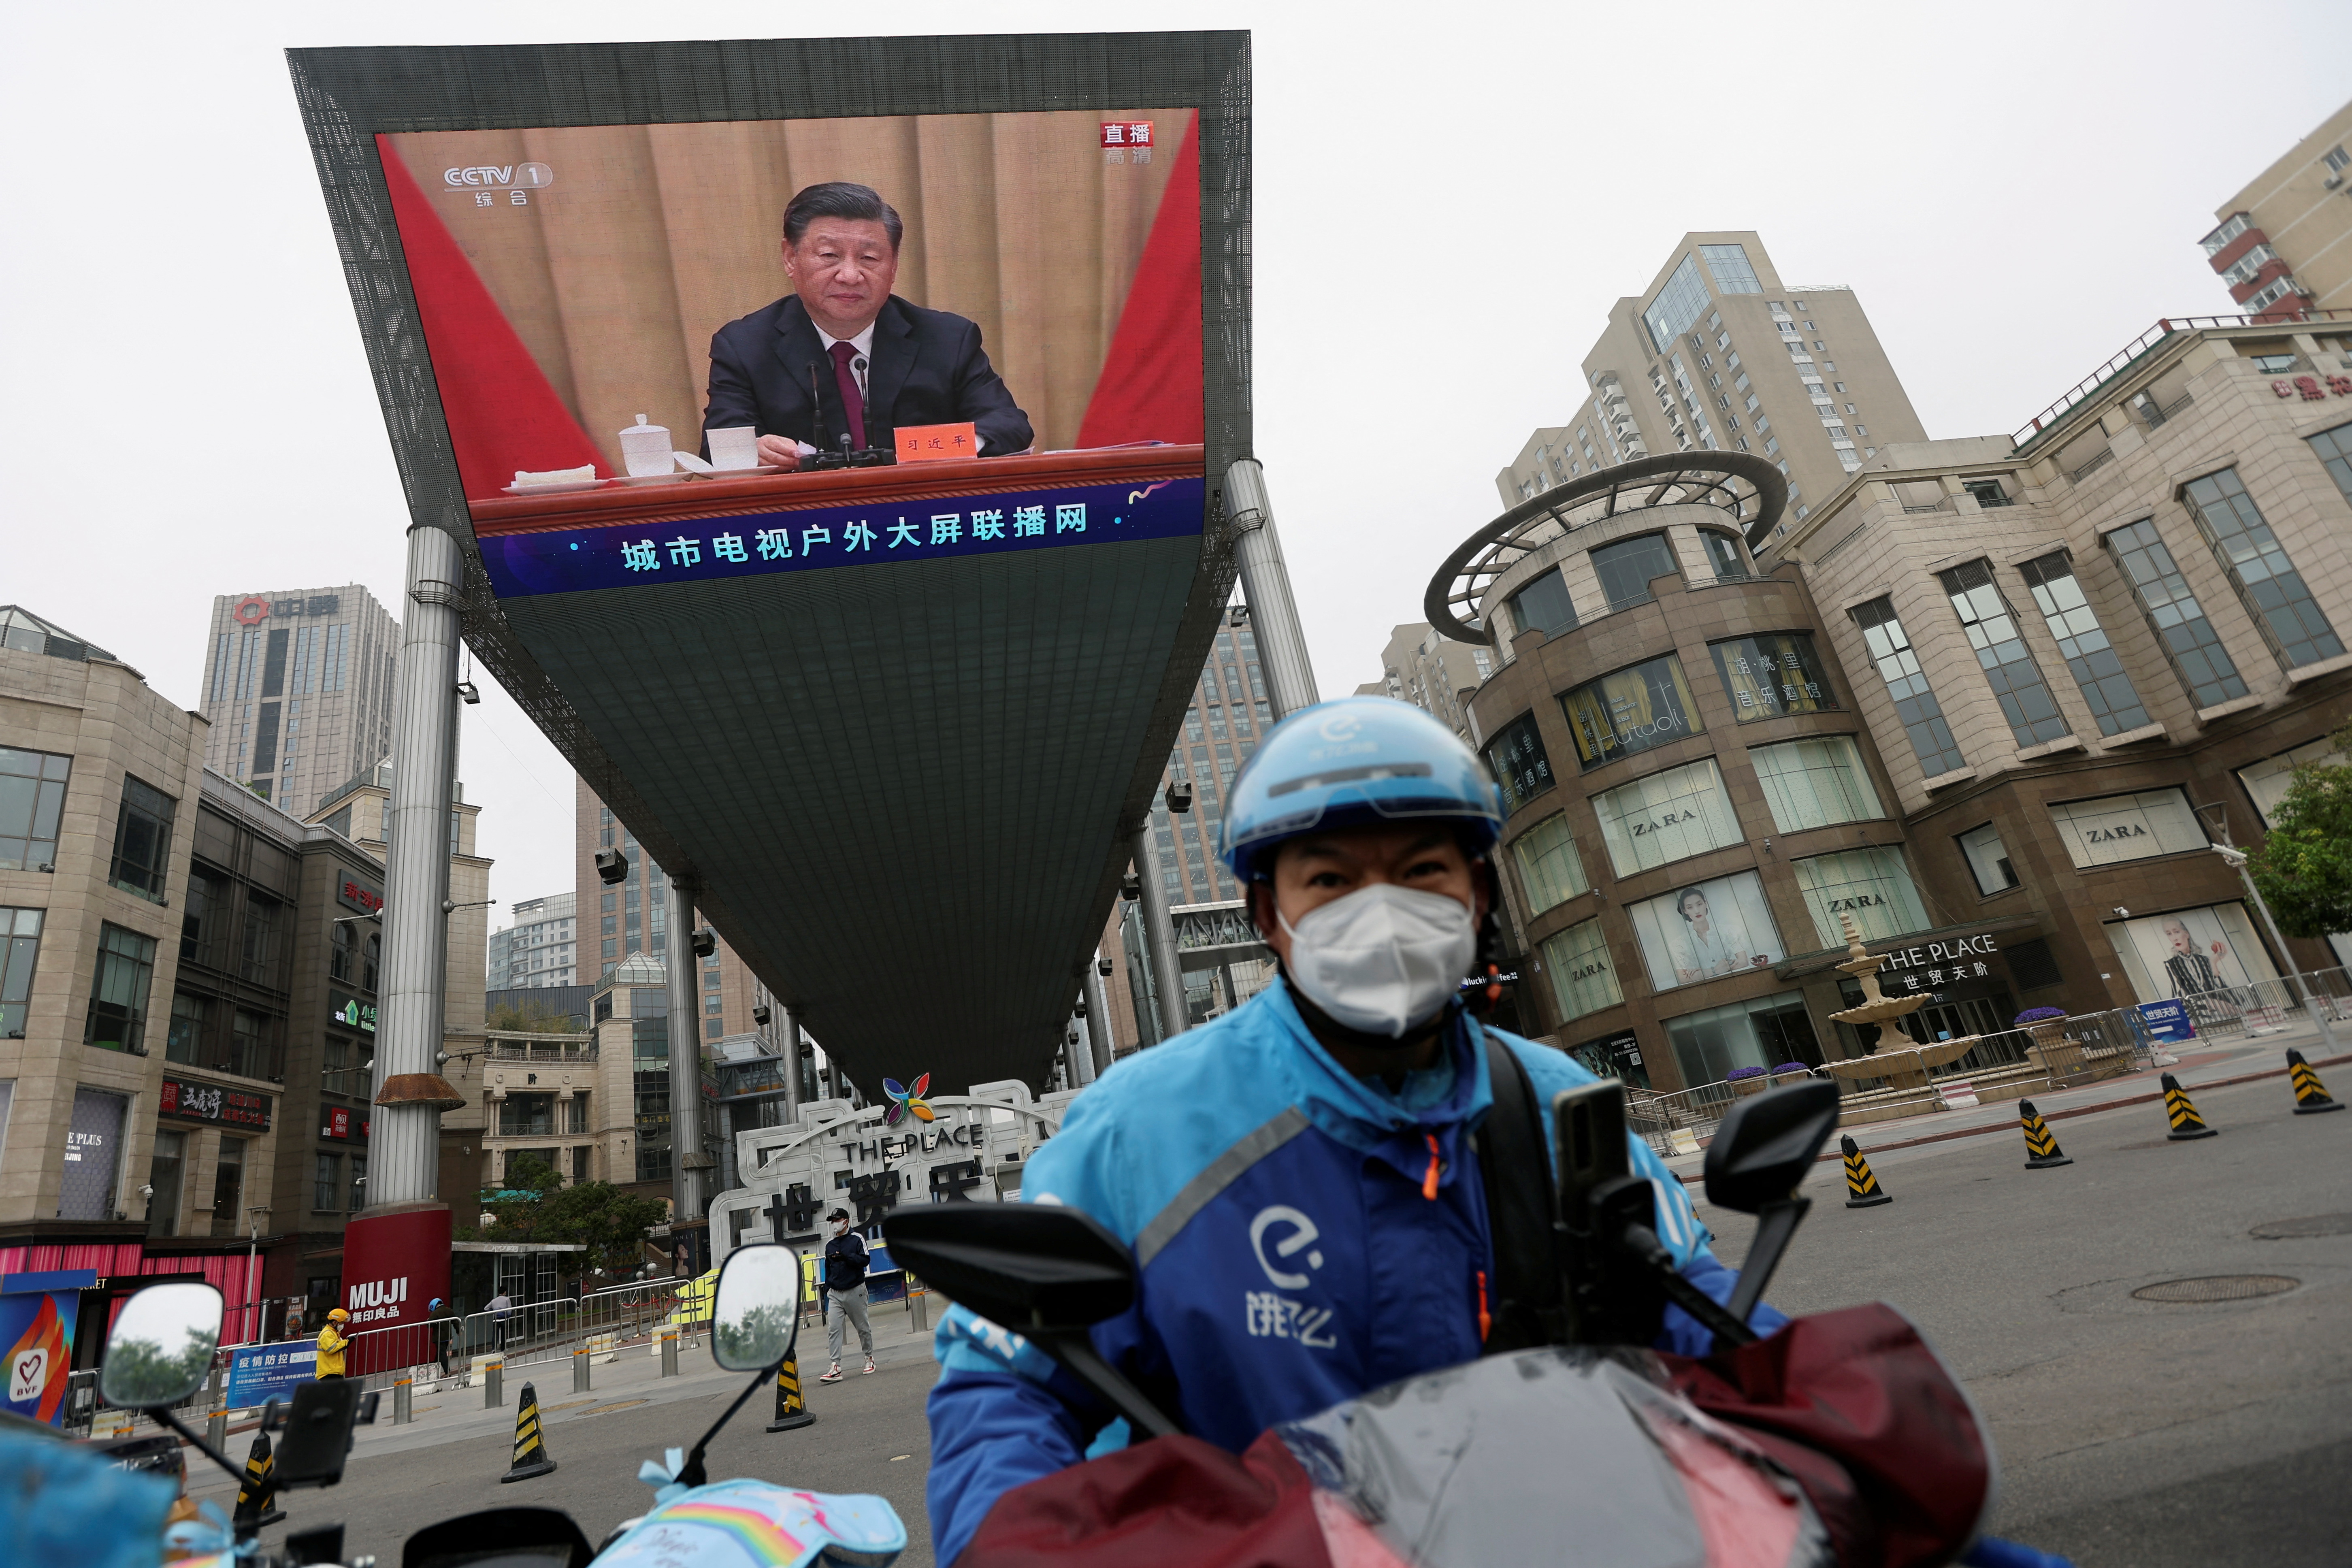 Una pantalla gigante que muestra al presidente chino Xi Jinping en un acto de celebración del centenario de la fundación de la Liga de la Juventud Comunista China, en Pekín, China, el 10 de mayo de 2022 (REUTERS/Tingshu Wang)